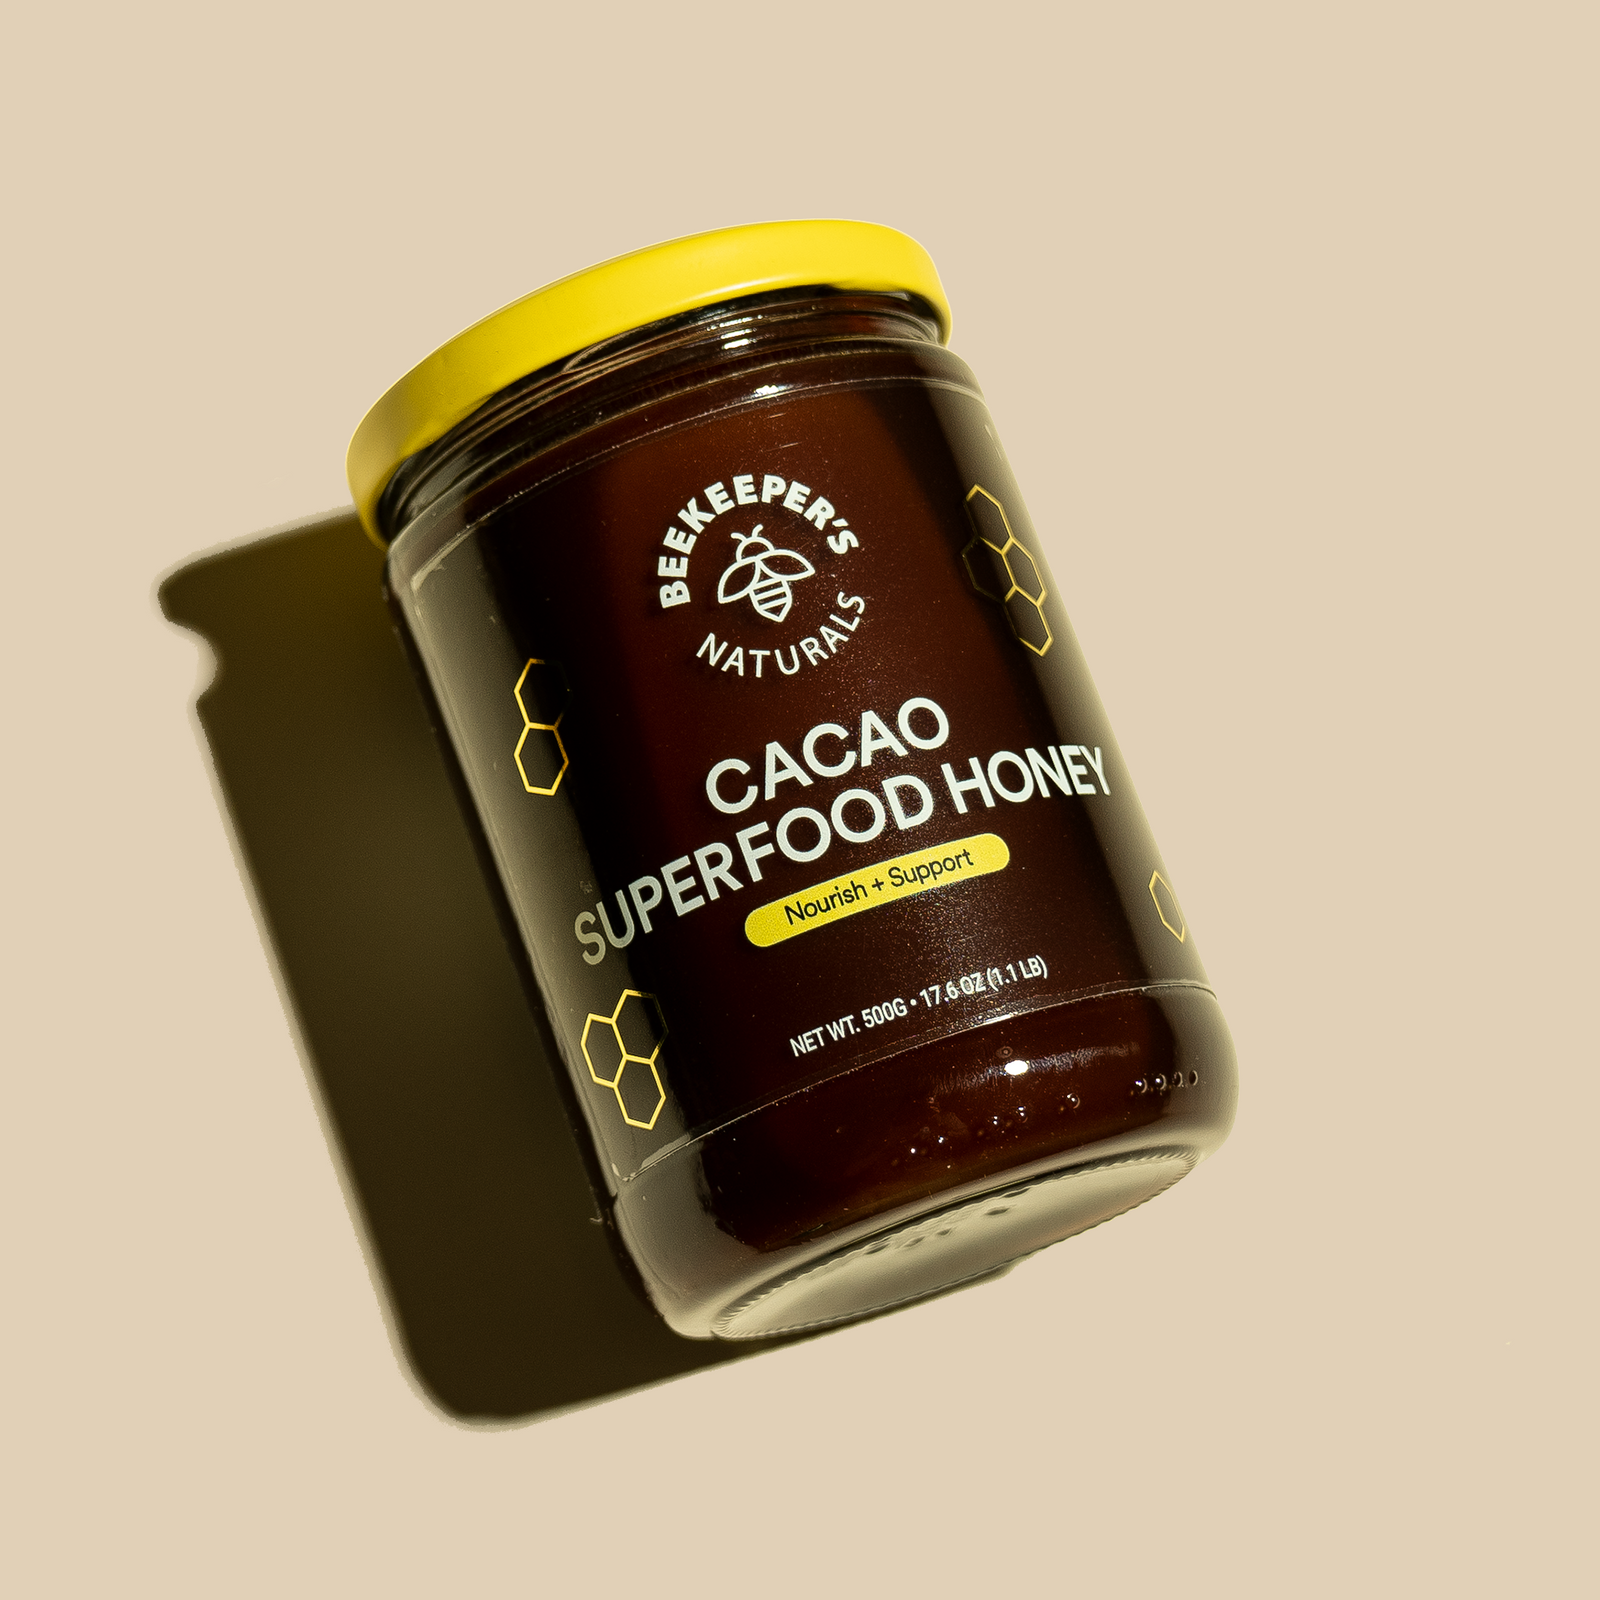 Cacao Superfood Honey - Cacao Superfood Honey